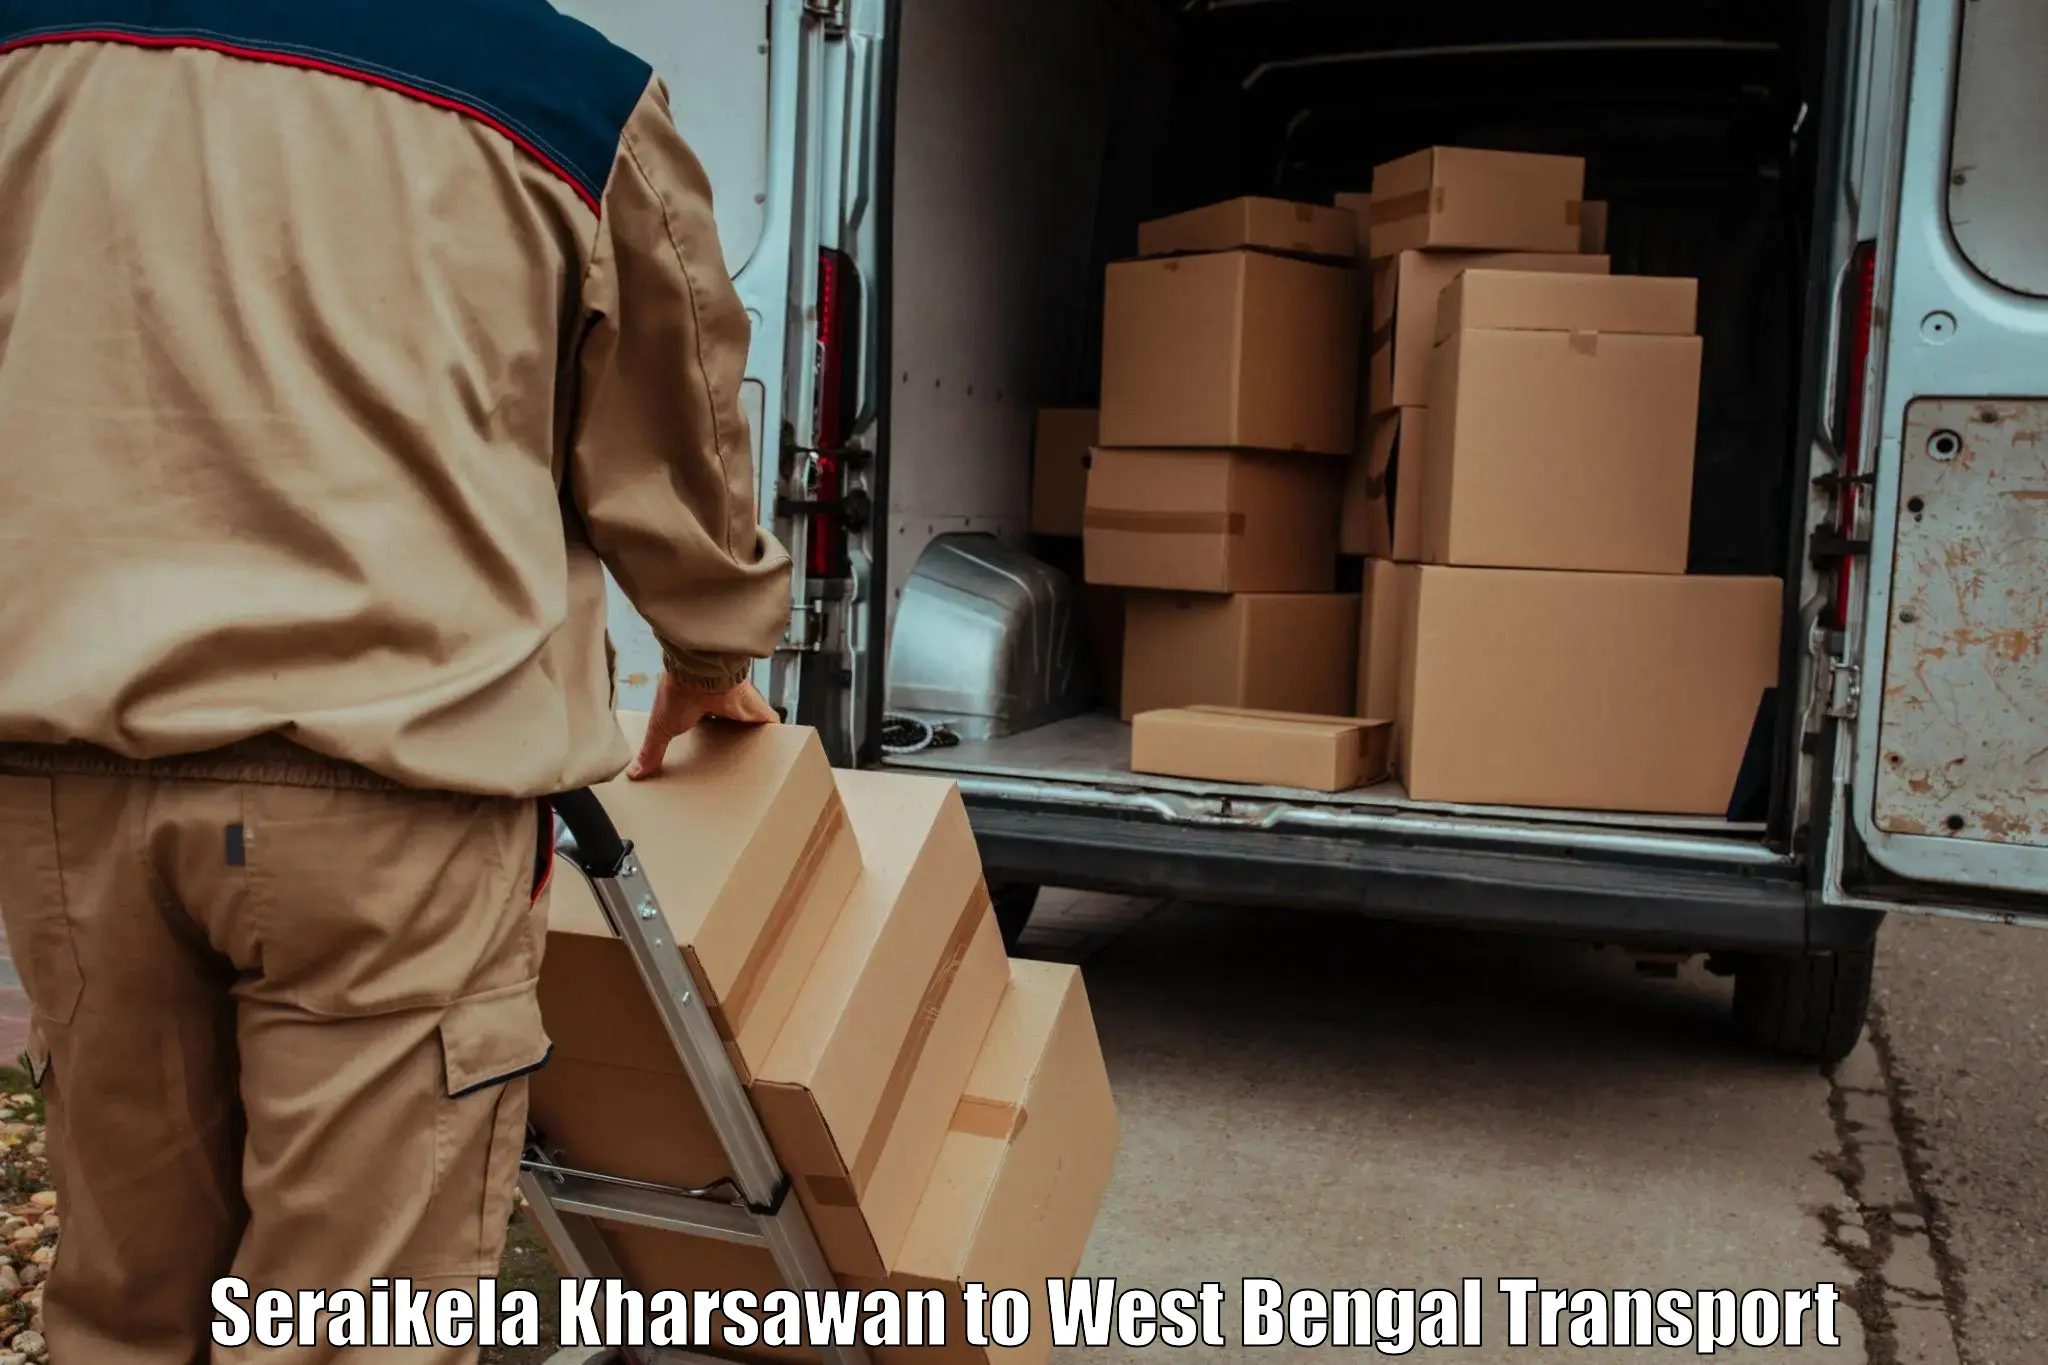 Bike shipping service Seraikela Kharsawan to Binnaguri